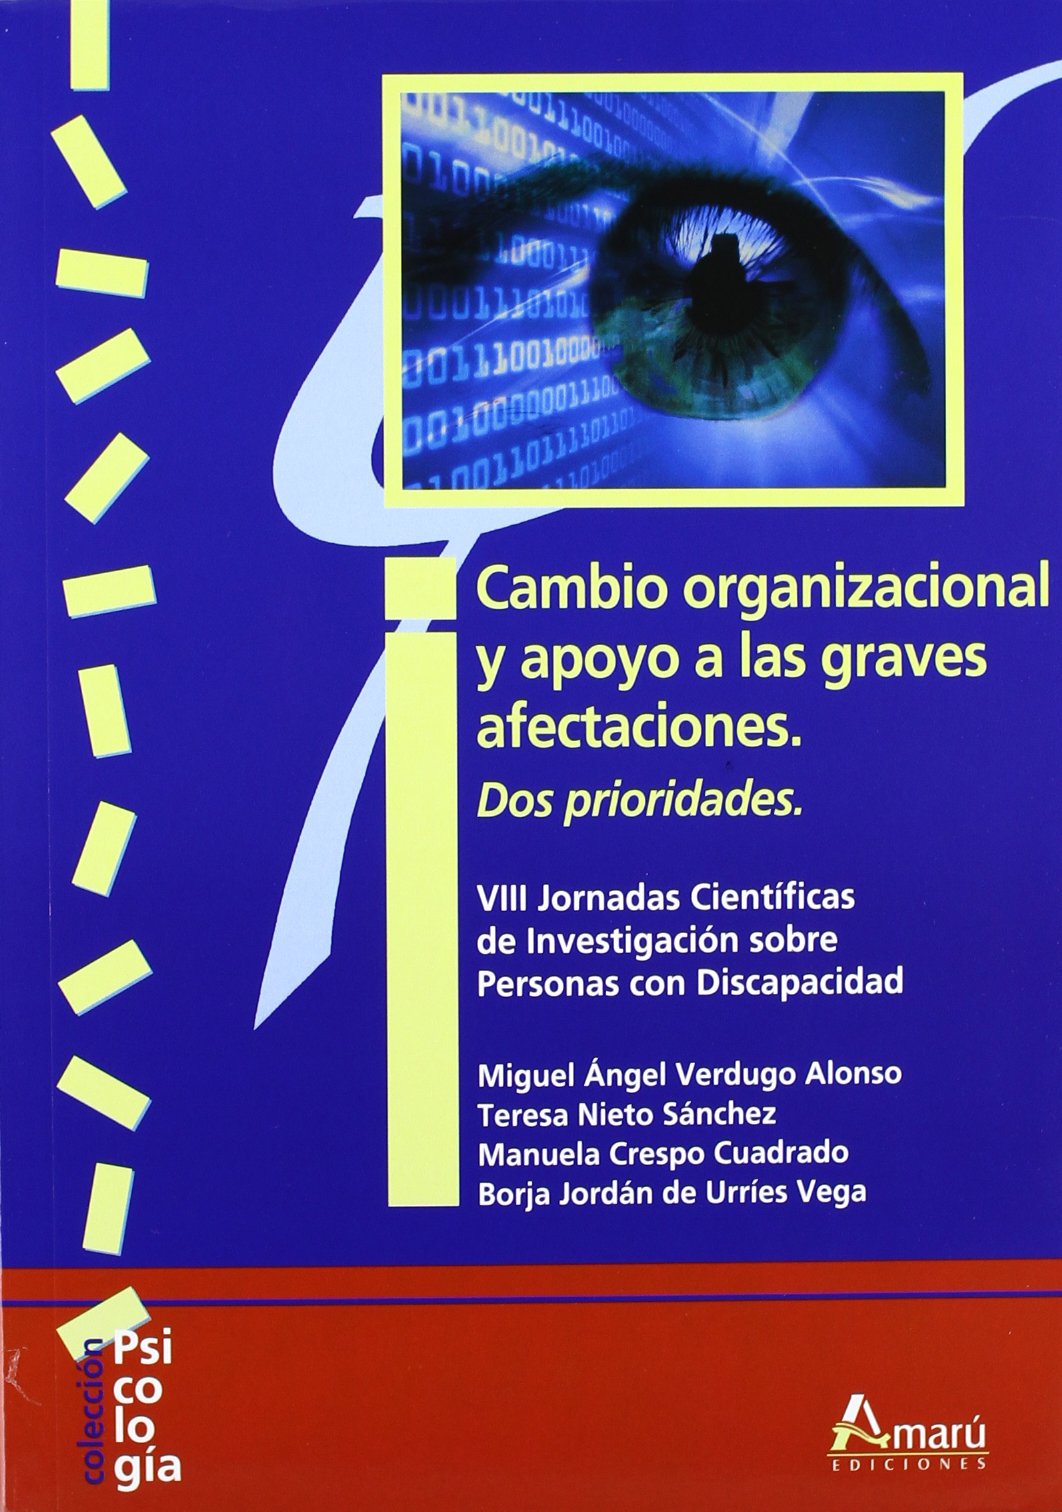 Imagen de portada del libro Cambio organizacional y apoyo a las graves afectaciones